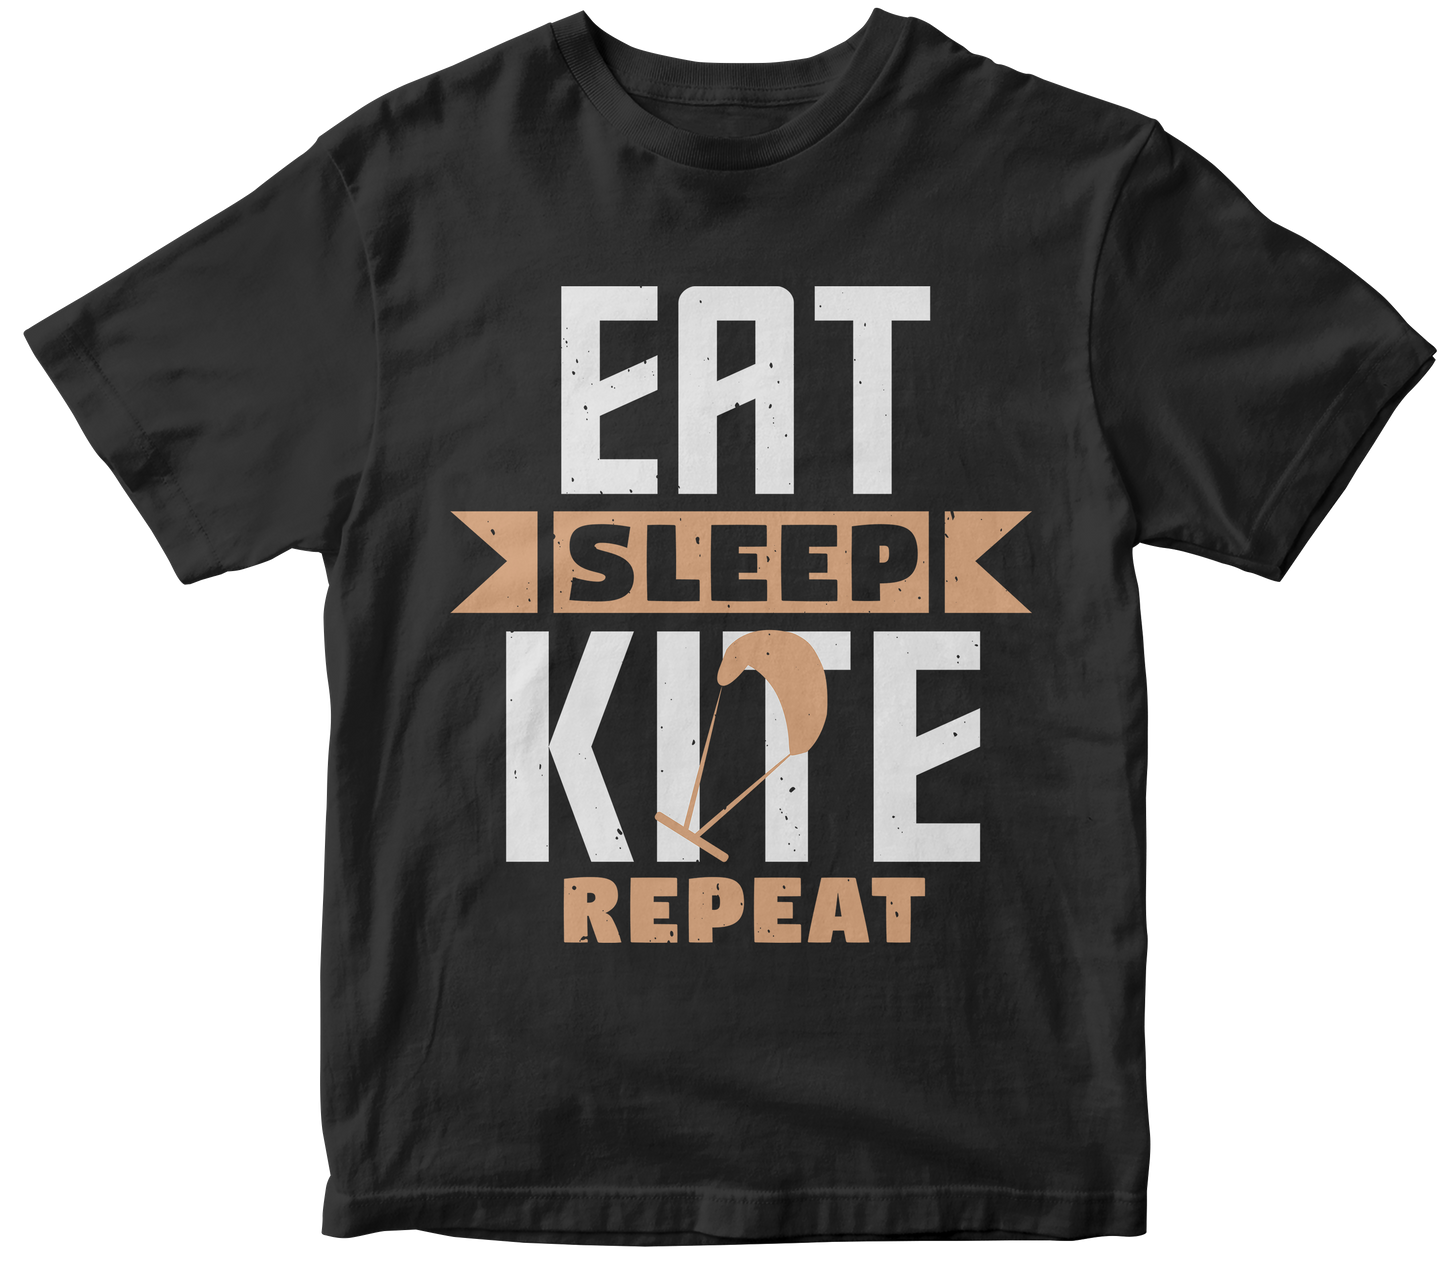 Eat, sleep, Kite, Repeat